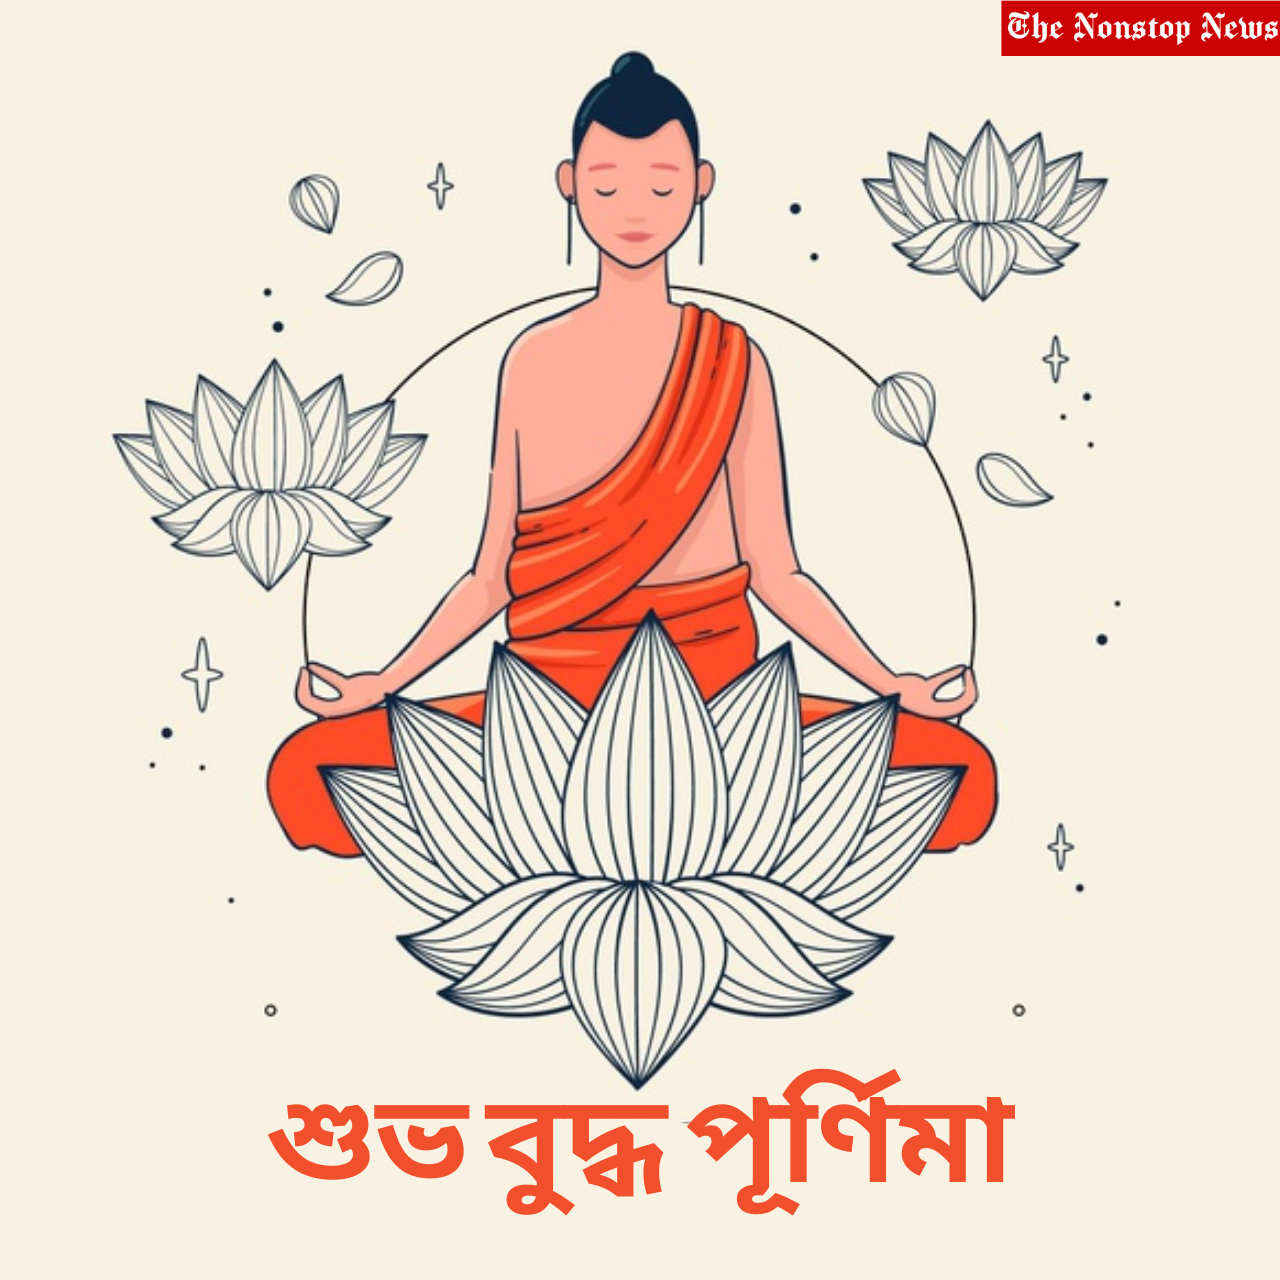 Buddha Purnima Wishes in Bengali